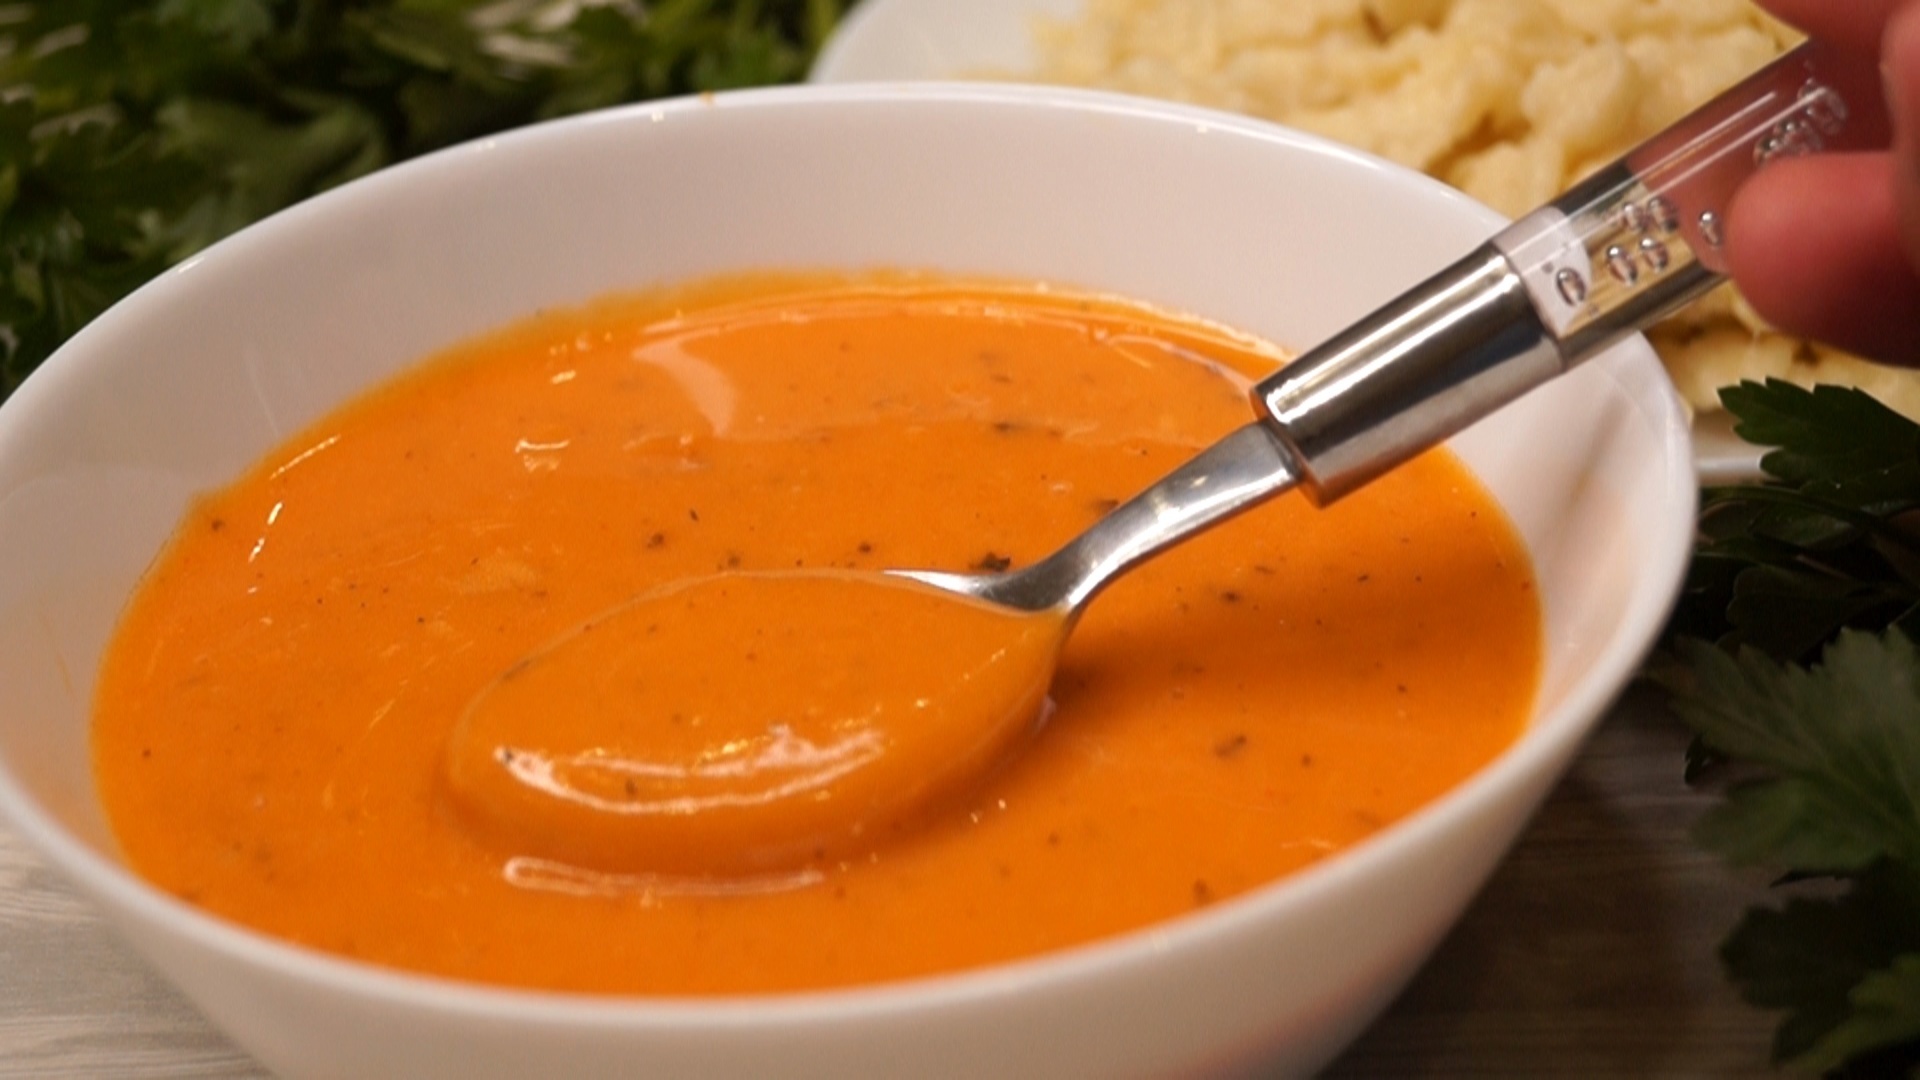 Вкусный простой подлив. Подлива. Котлеты в соусе. Соус оранжевого цвета. Соус для биточков мясных.